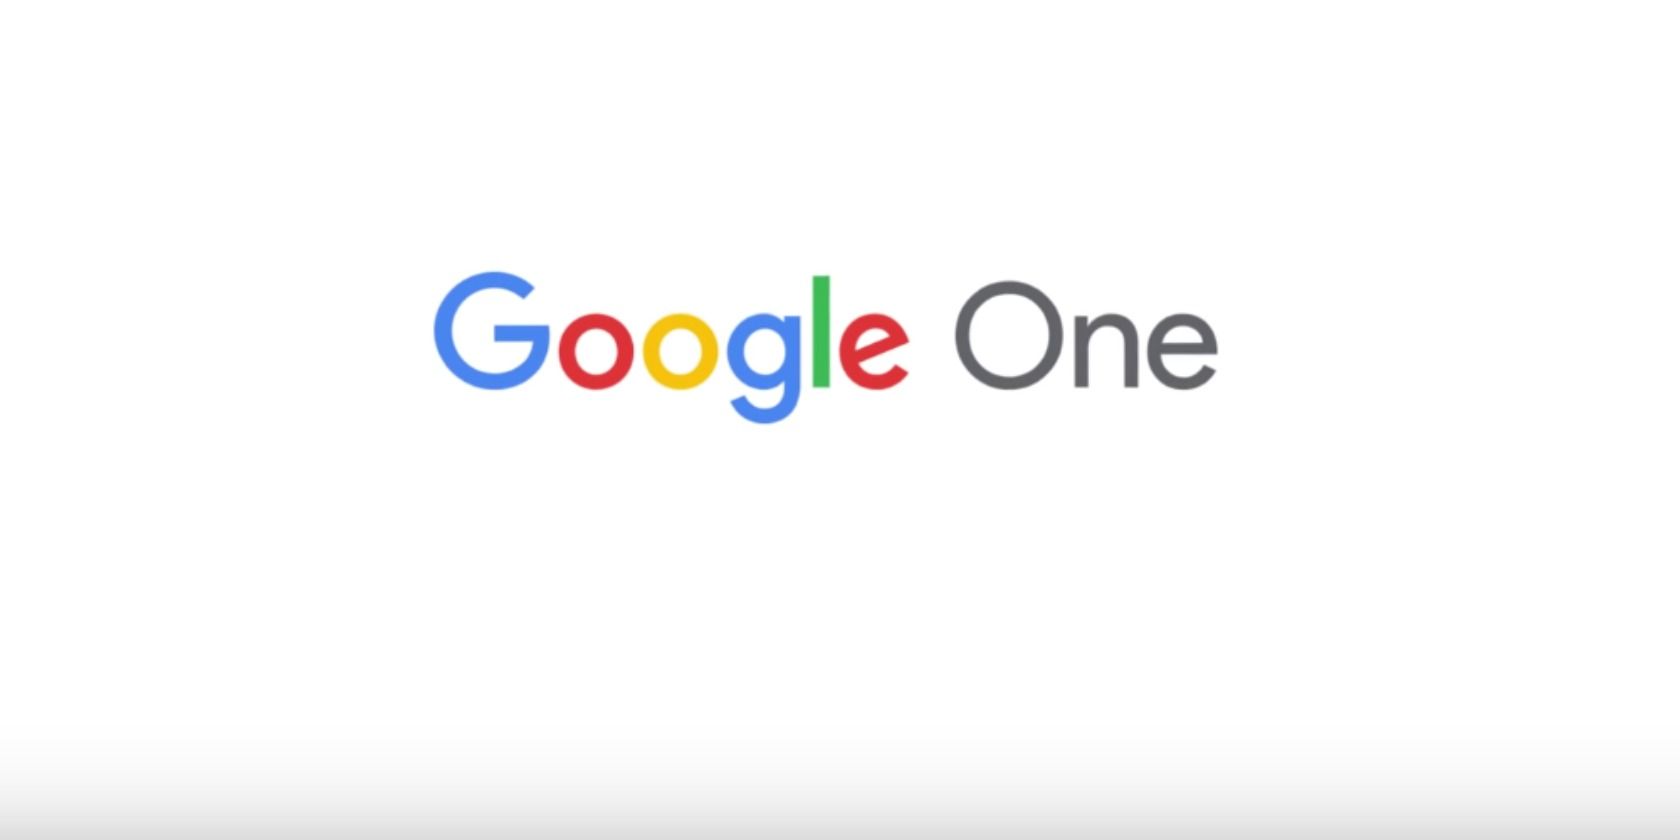 Google One logo on white background